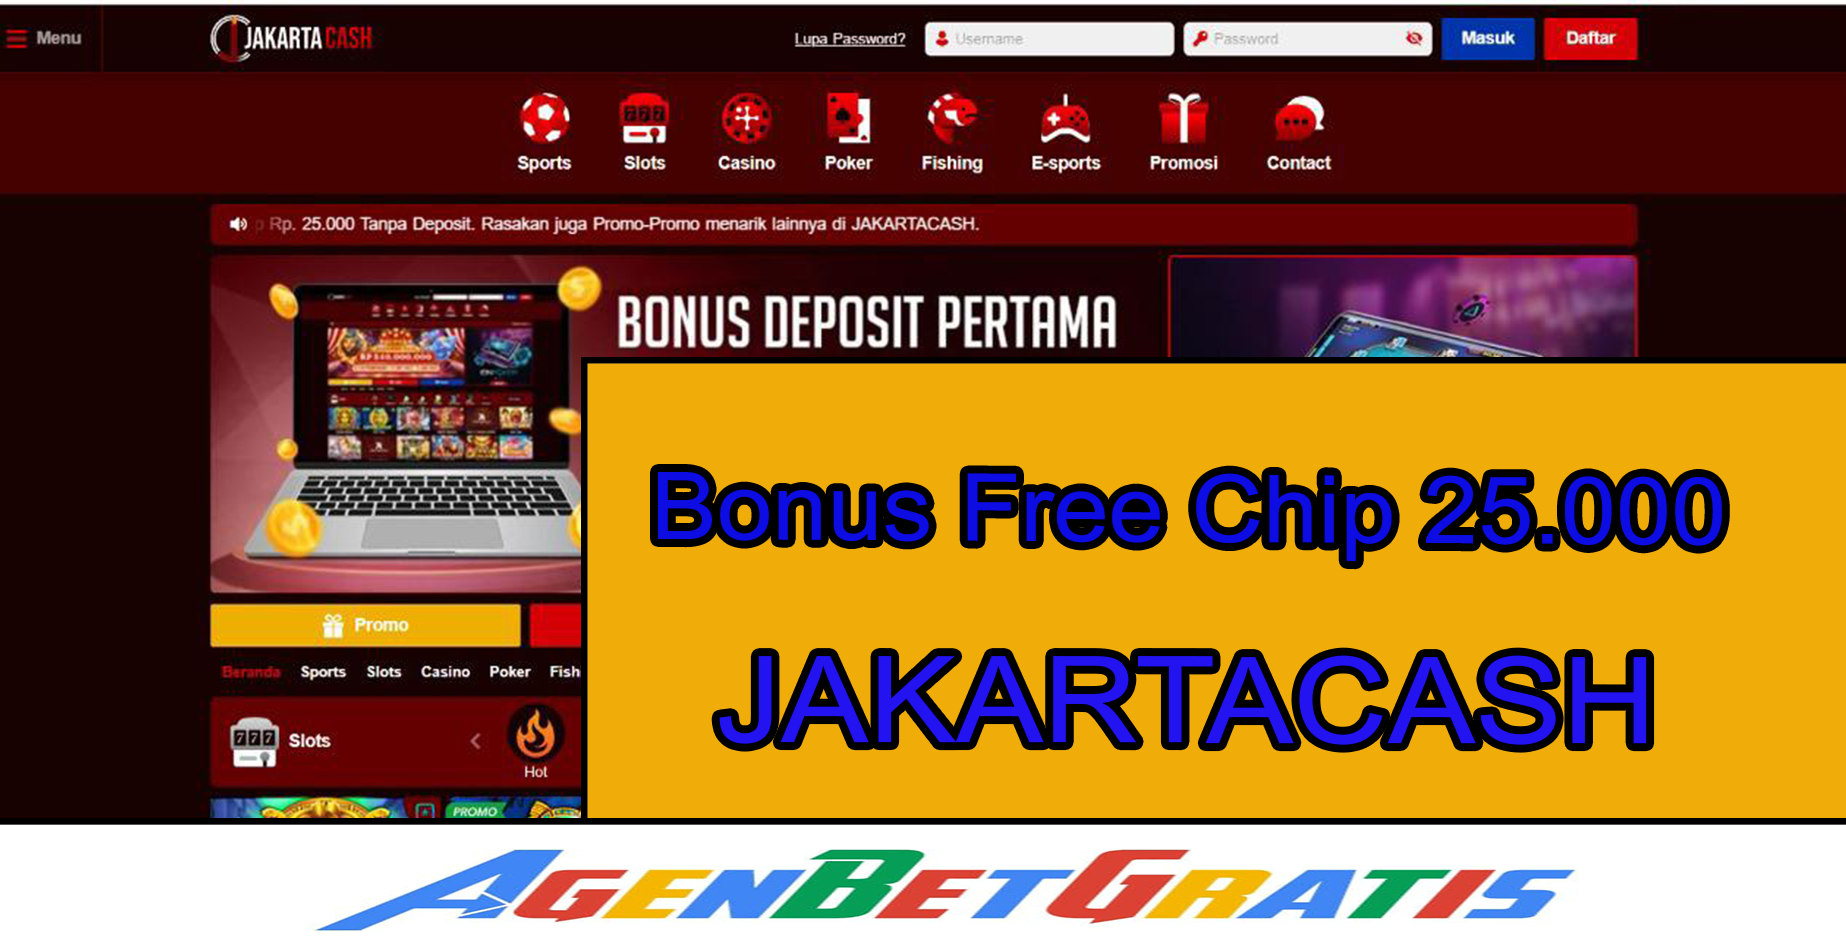 JAKARTACASH- Bonus Free Chip 25.000